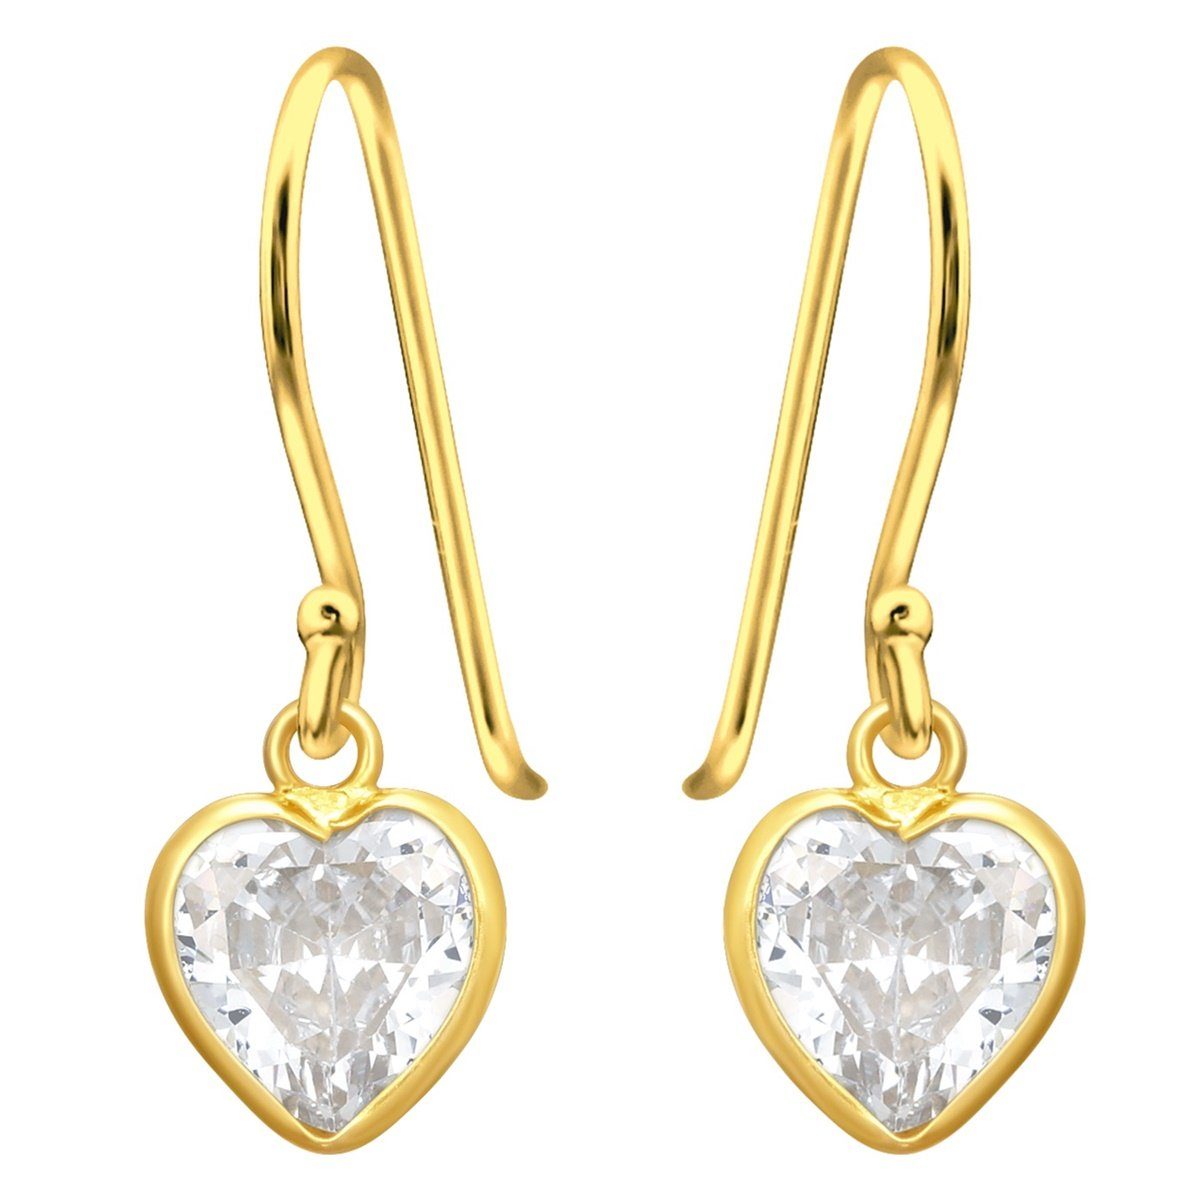 Goldene Hufeisen Paar Ohrhaken Herz Ohrringe aus 925 Sterling Silber Vergoldet mit Zirkonia Kristall (1 Paar, inkl. Etui), Anlaufgeschützt